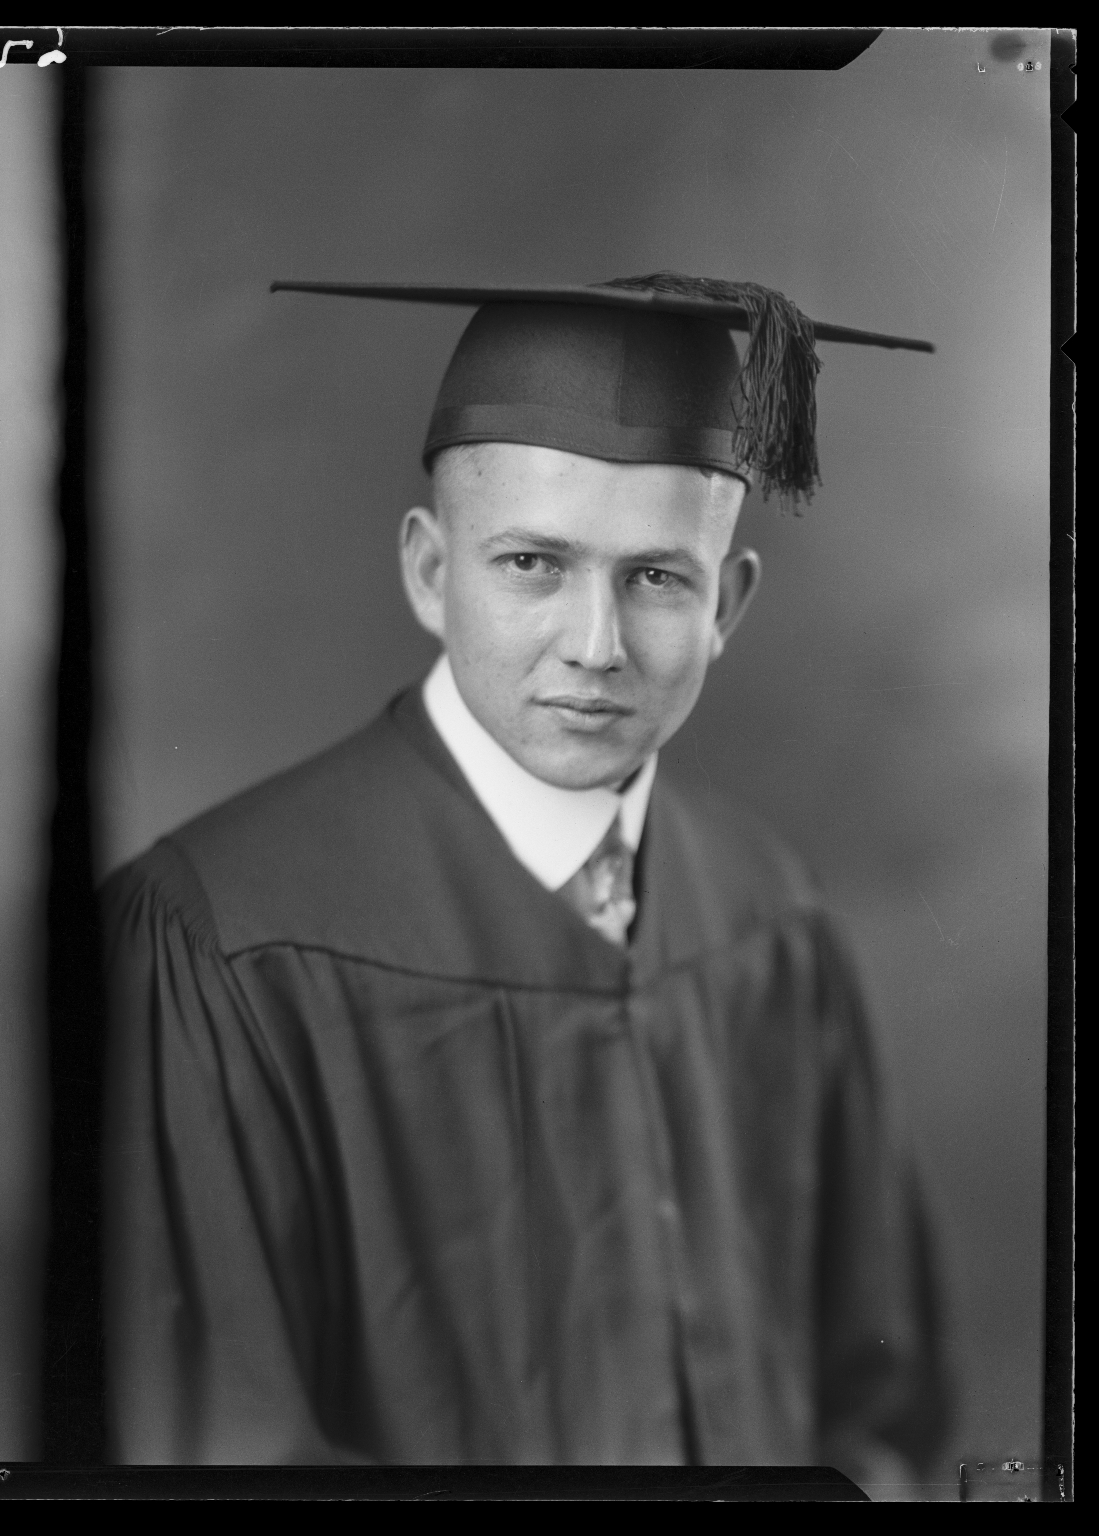 Portraits of L. B. Johnson